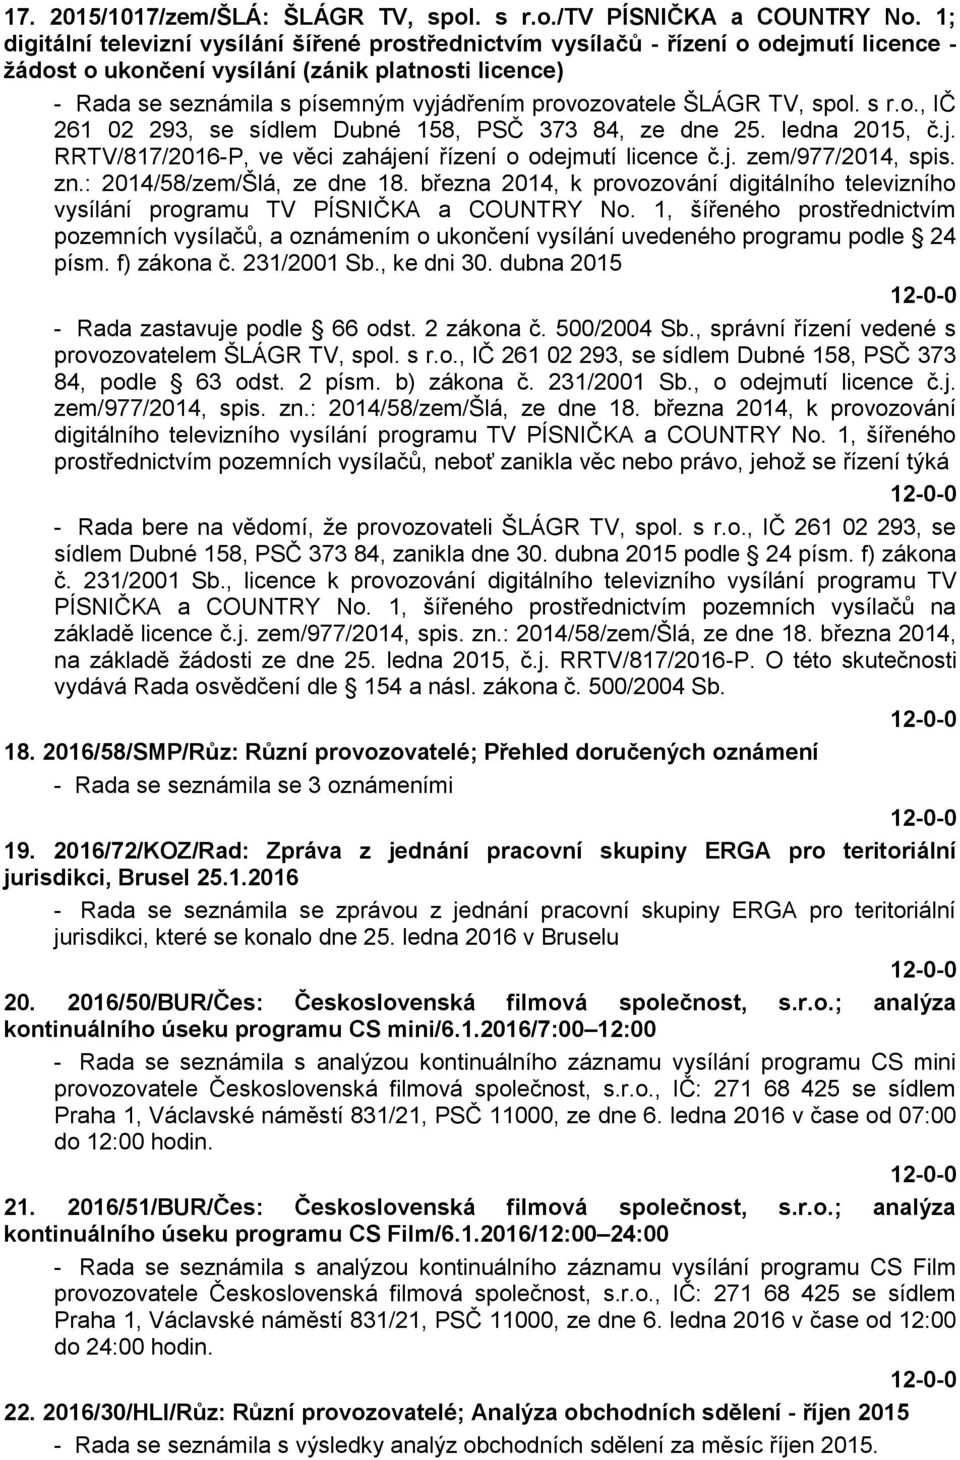 provozovatele ŠLÁGR TV, spol. s r.o., IČ 261 02 293, se sídlem Dubné 158, PSČ 373 84, ze dne 25. ledna 2015, č.j. RRTV/817/2016-P, ve věci zahájení řízení o odejmutí licence č.j. zem/977/2014, spis.